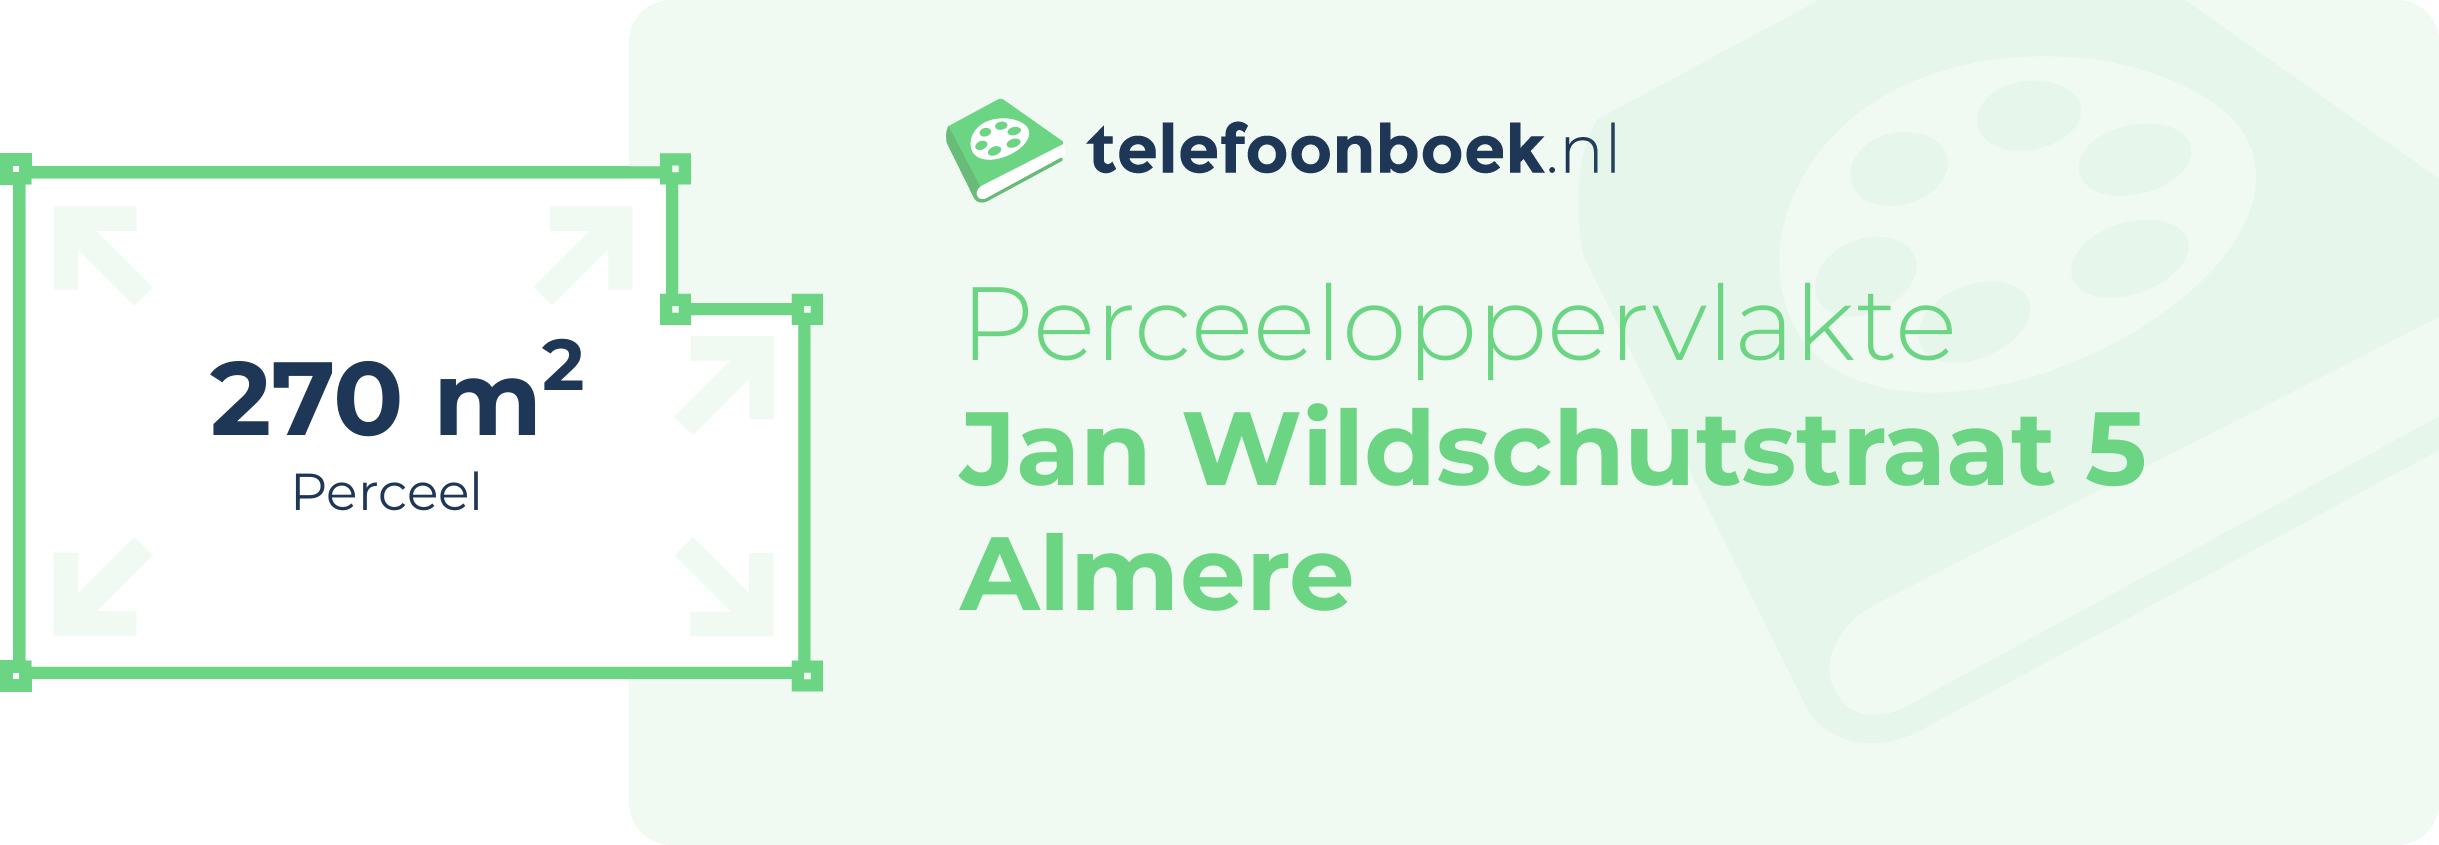 Perceeloppervlakte Jan Wildschutstraat 5 Almere